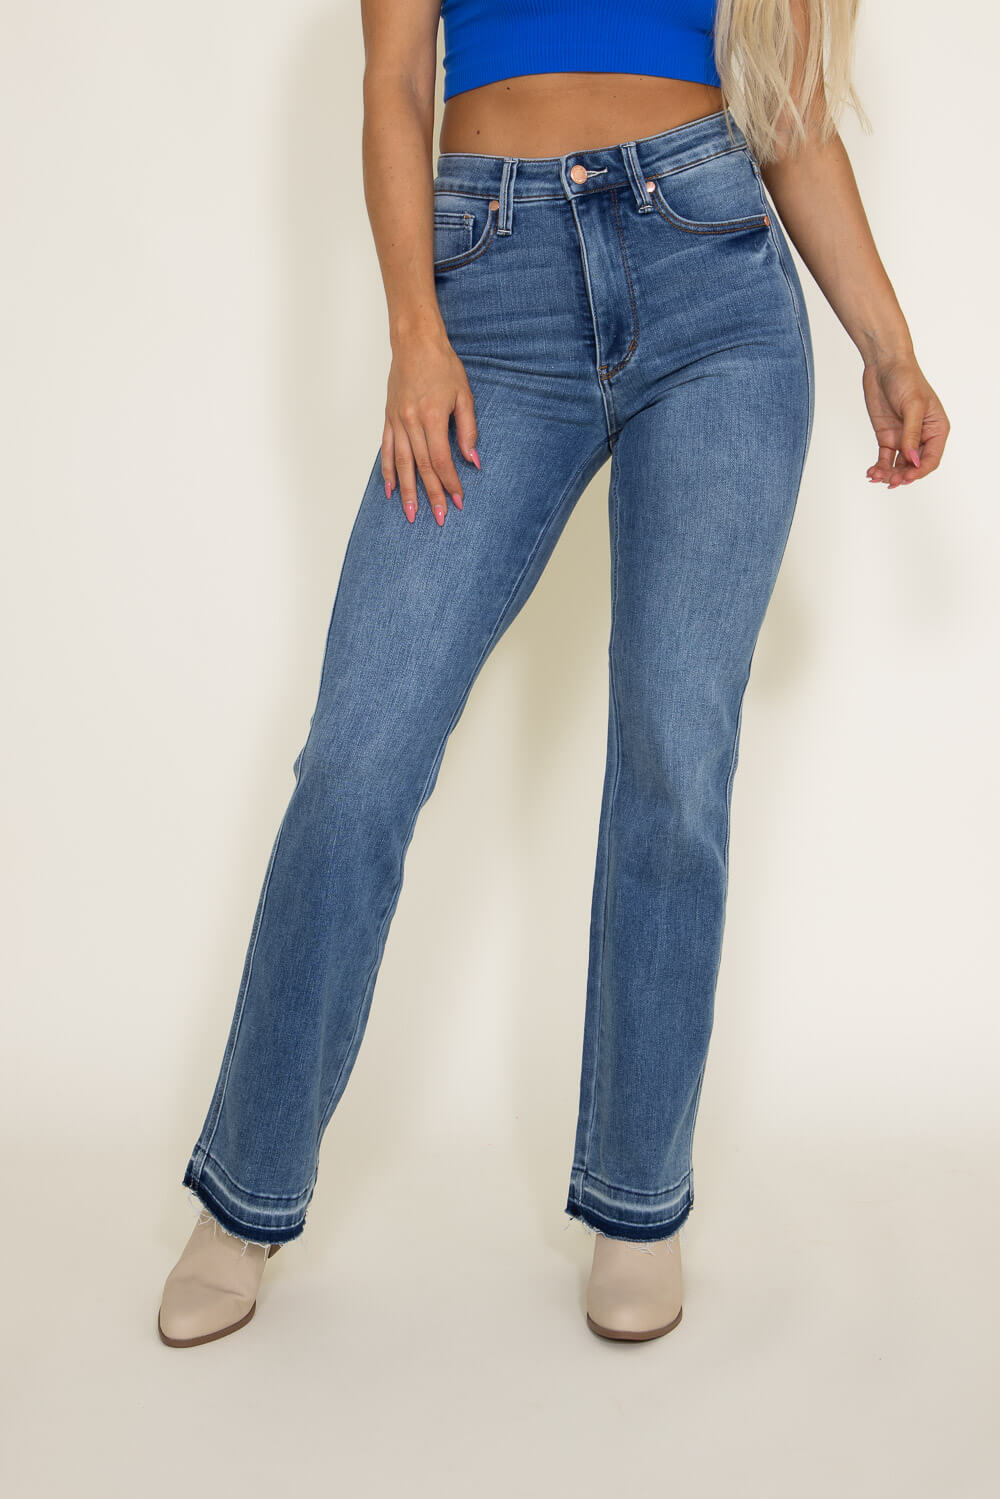 https://www.gliks.com/cdn/shop/files/judy-blue-jeans-women-bootcut-2.jpg?v=1696097329